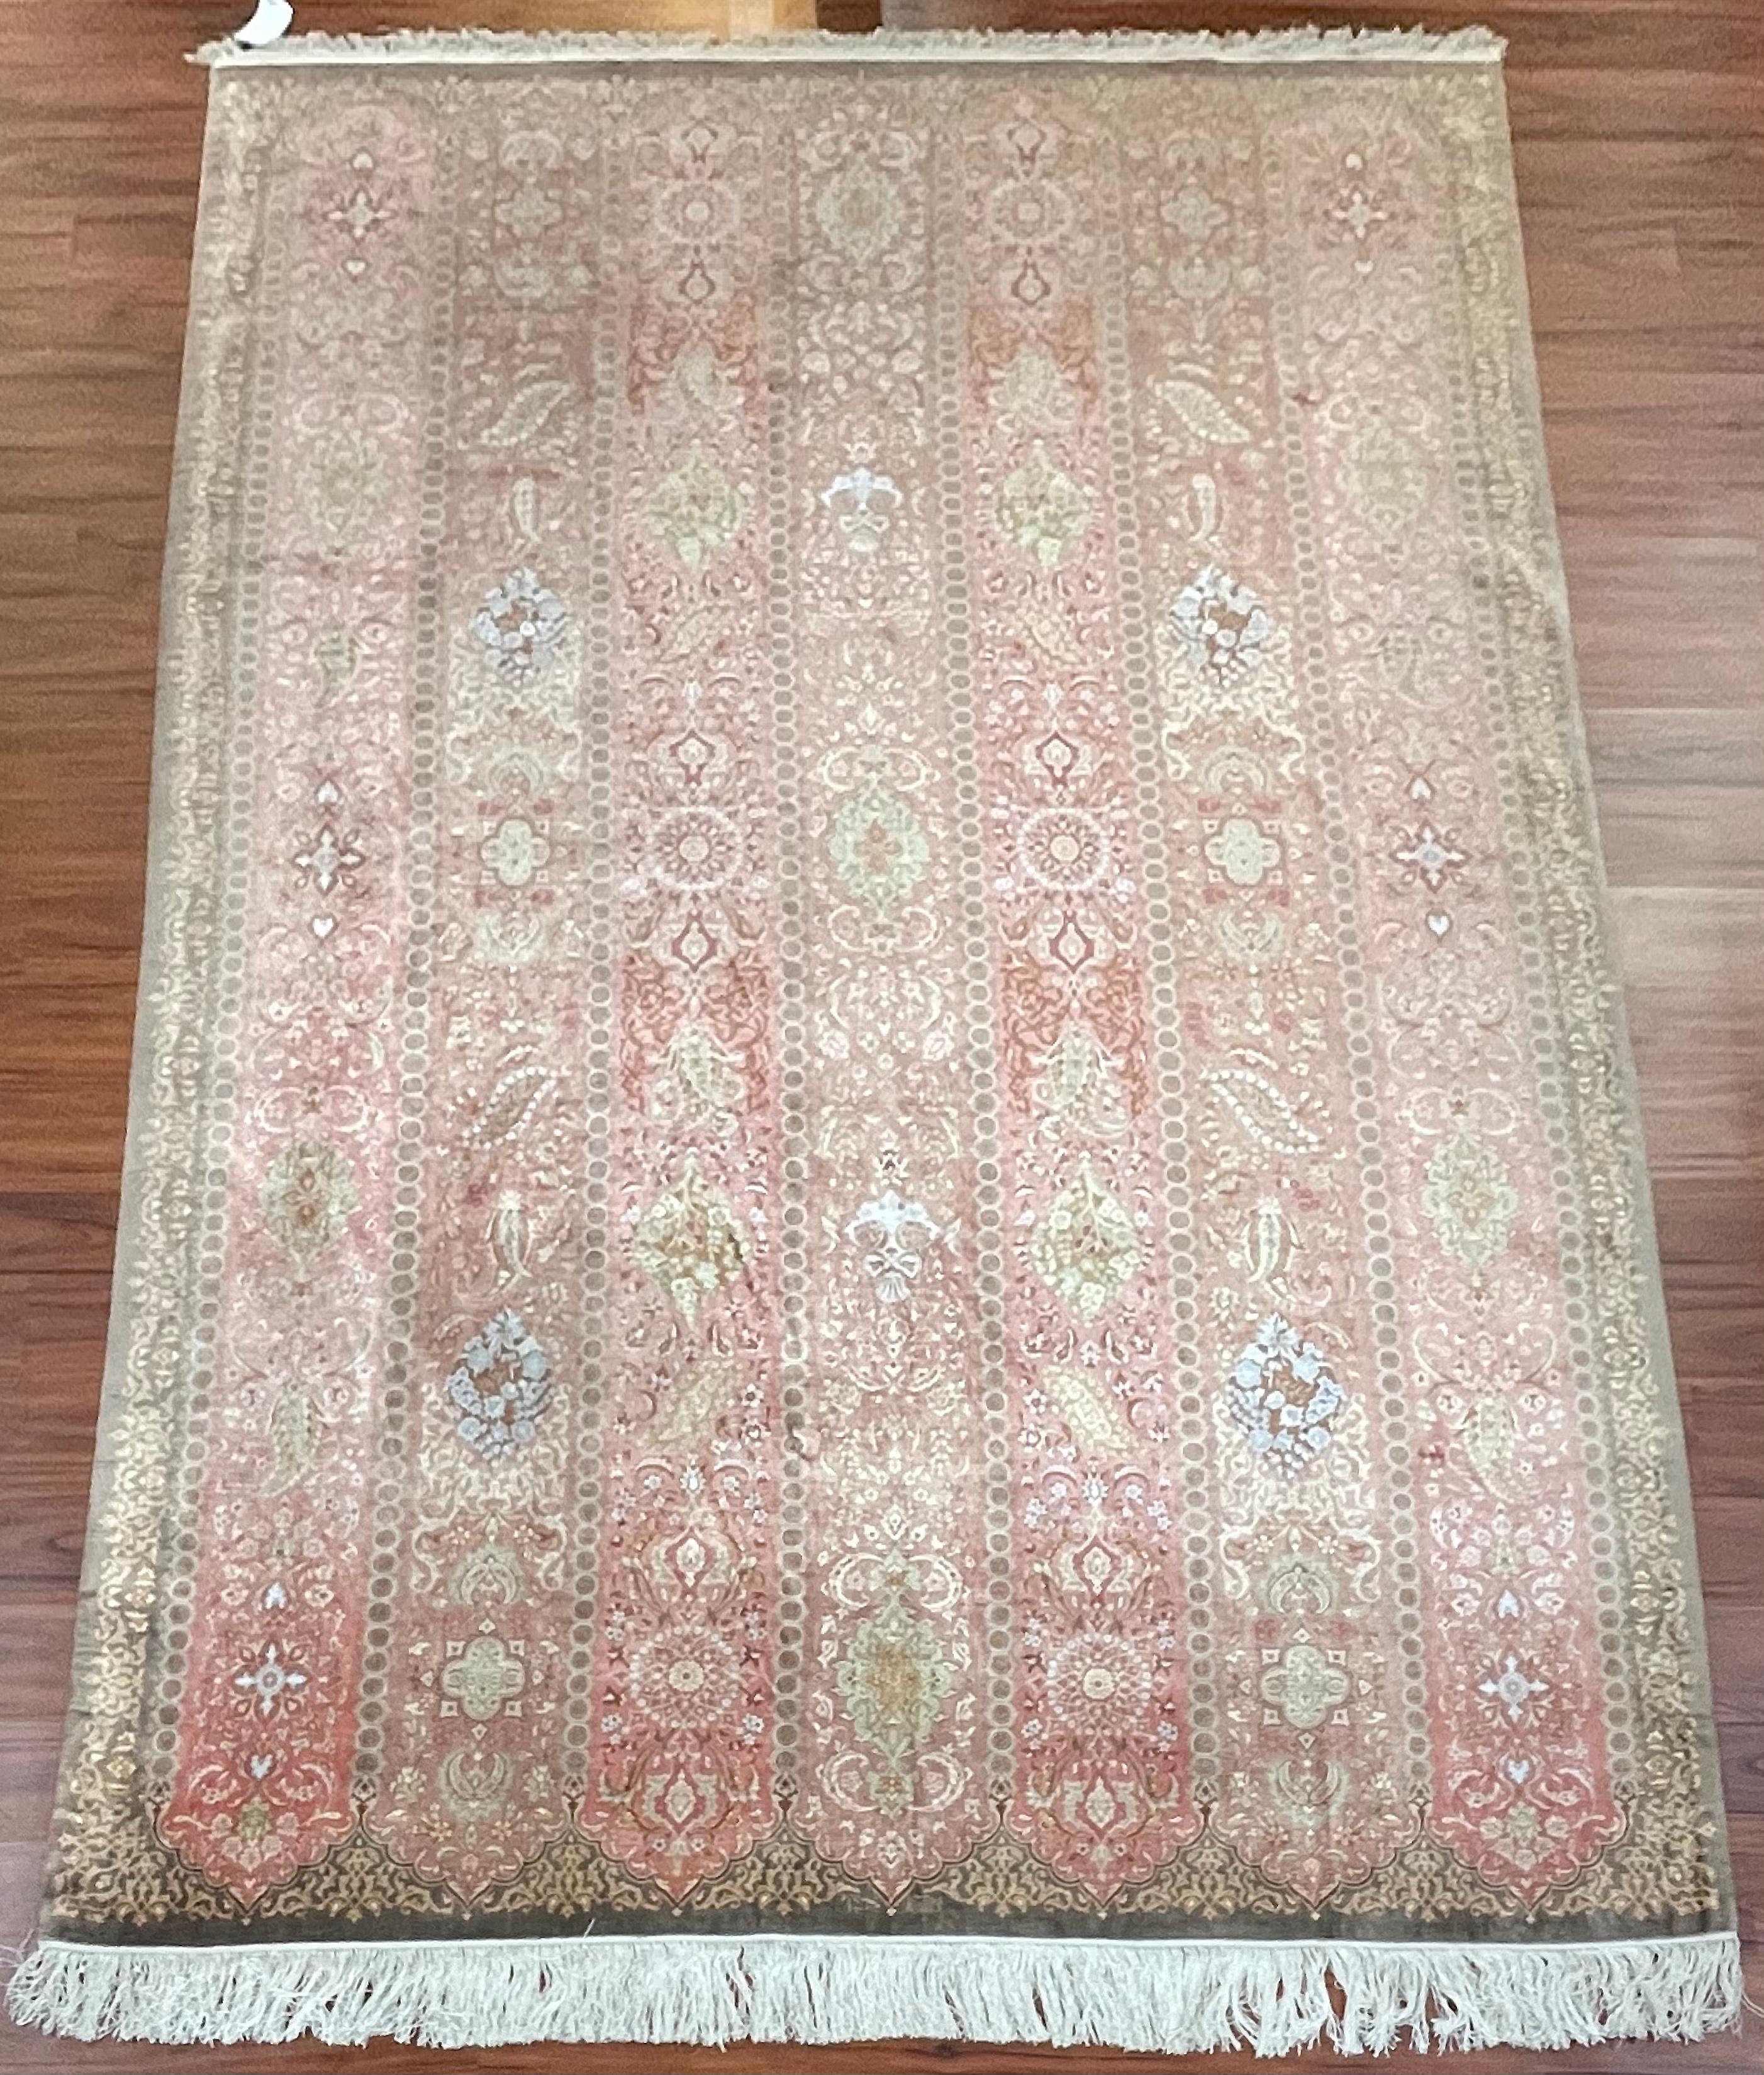 Un étonnant tapis persan Qum 100% soie. Cette pièce a été fabriquée dans les années 1980 en Iran et est en excellent état. Le tapis mesure 6 pieds 7 pouces de large et 9 pieds 11 pouces de long. N'hésitez pas à m'envoyer un message si vous avez des